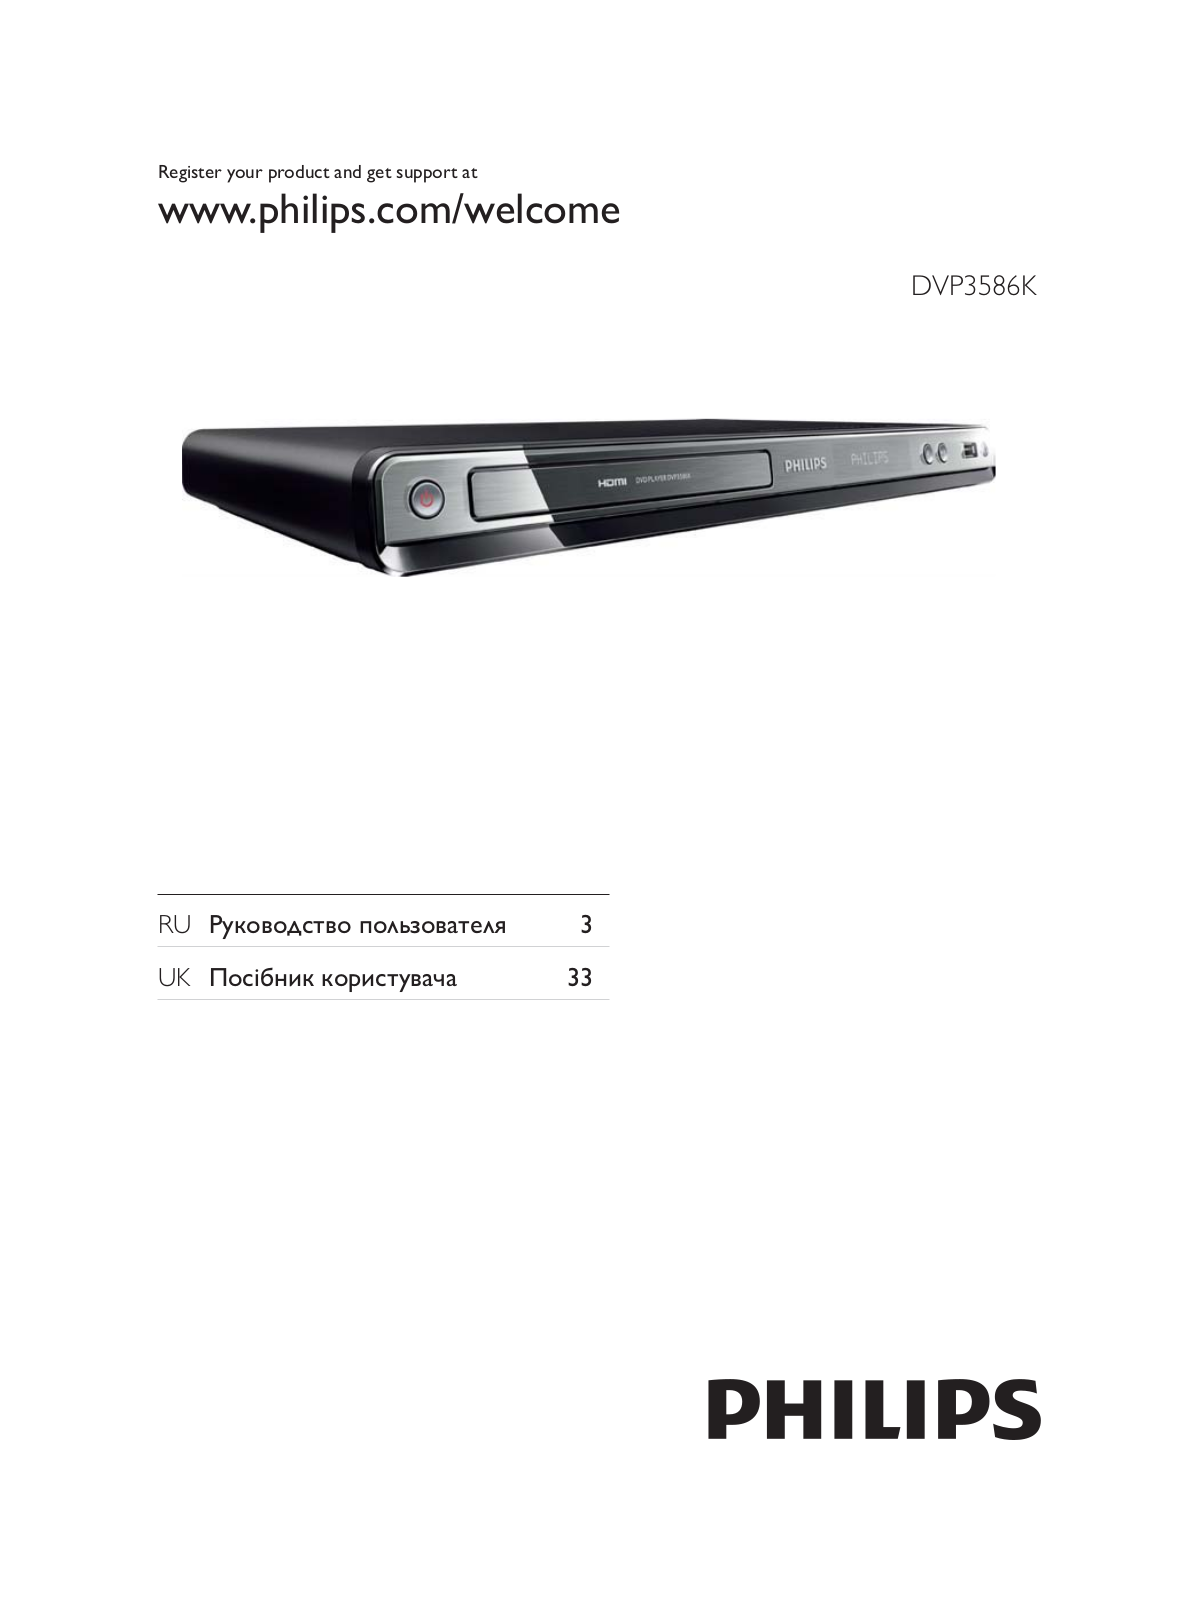 Philips DVP3586K User Manual